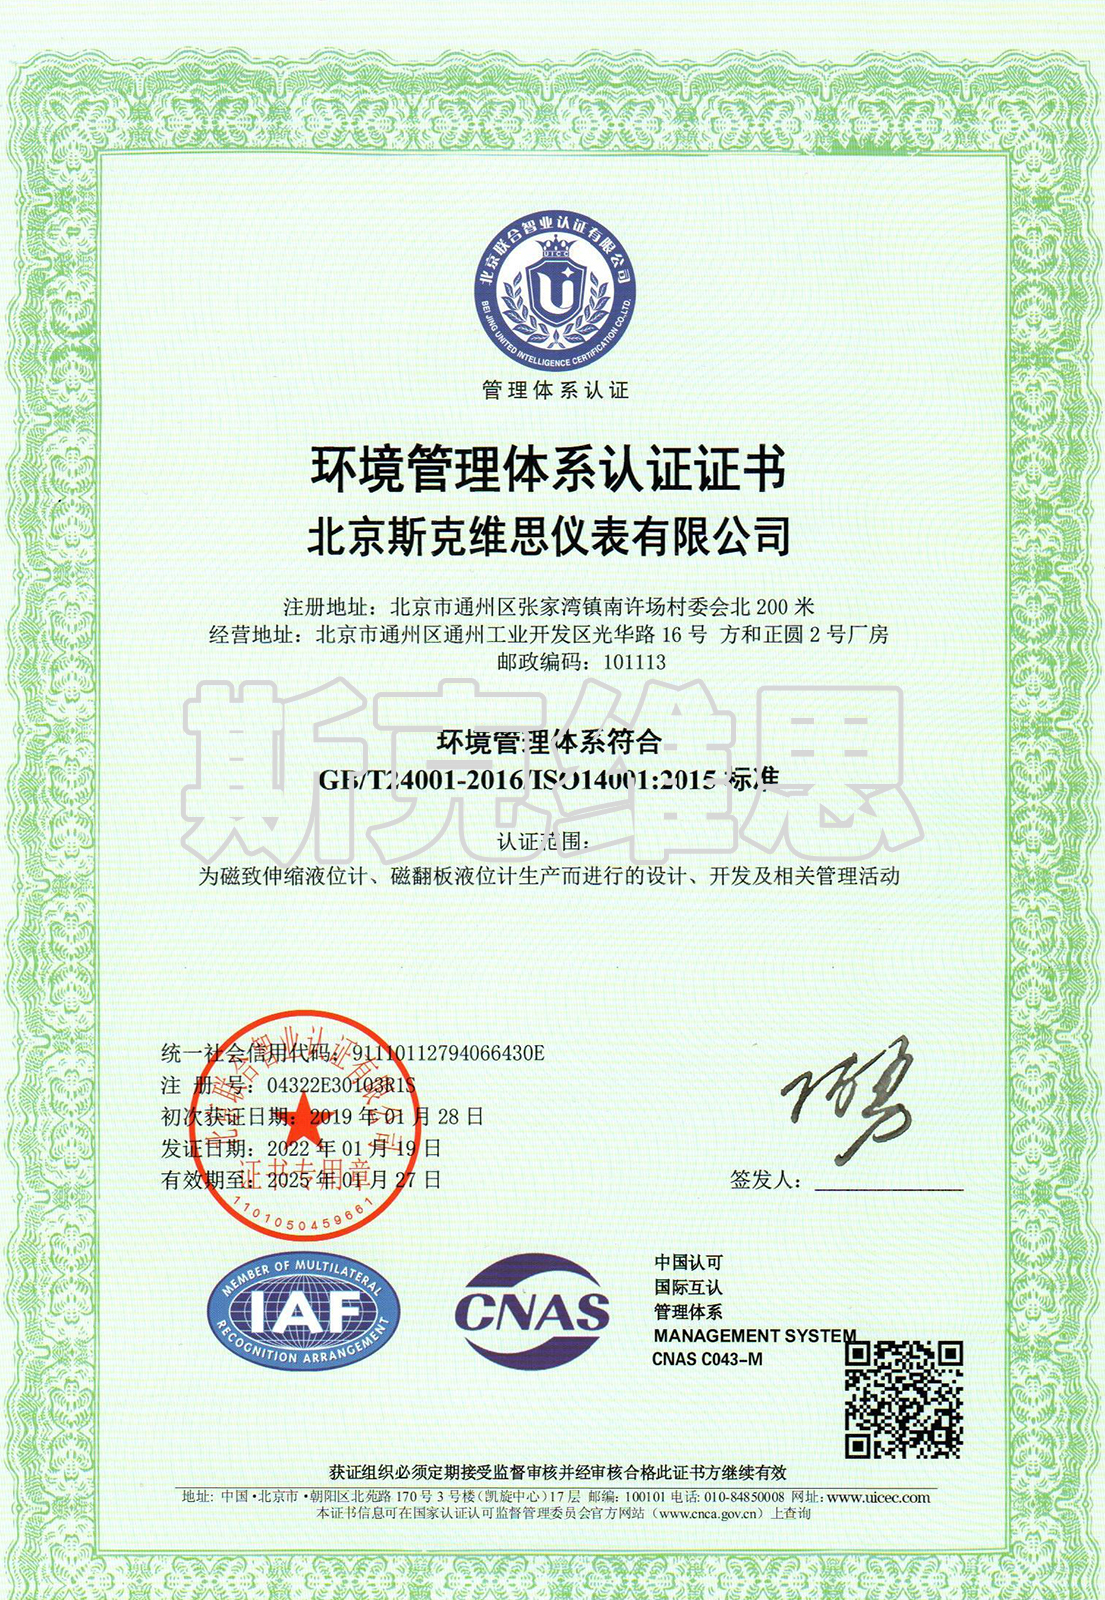 05-环境管理体系证书-中文.jpg